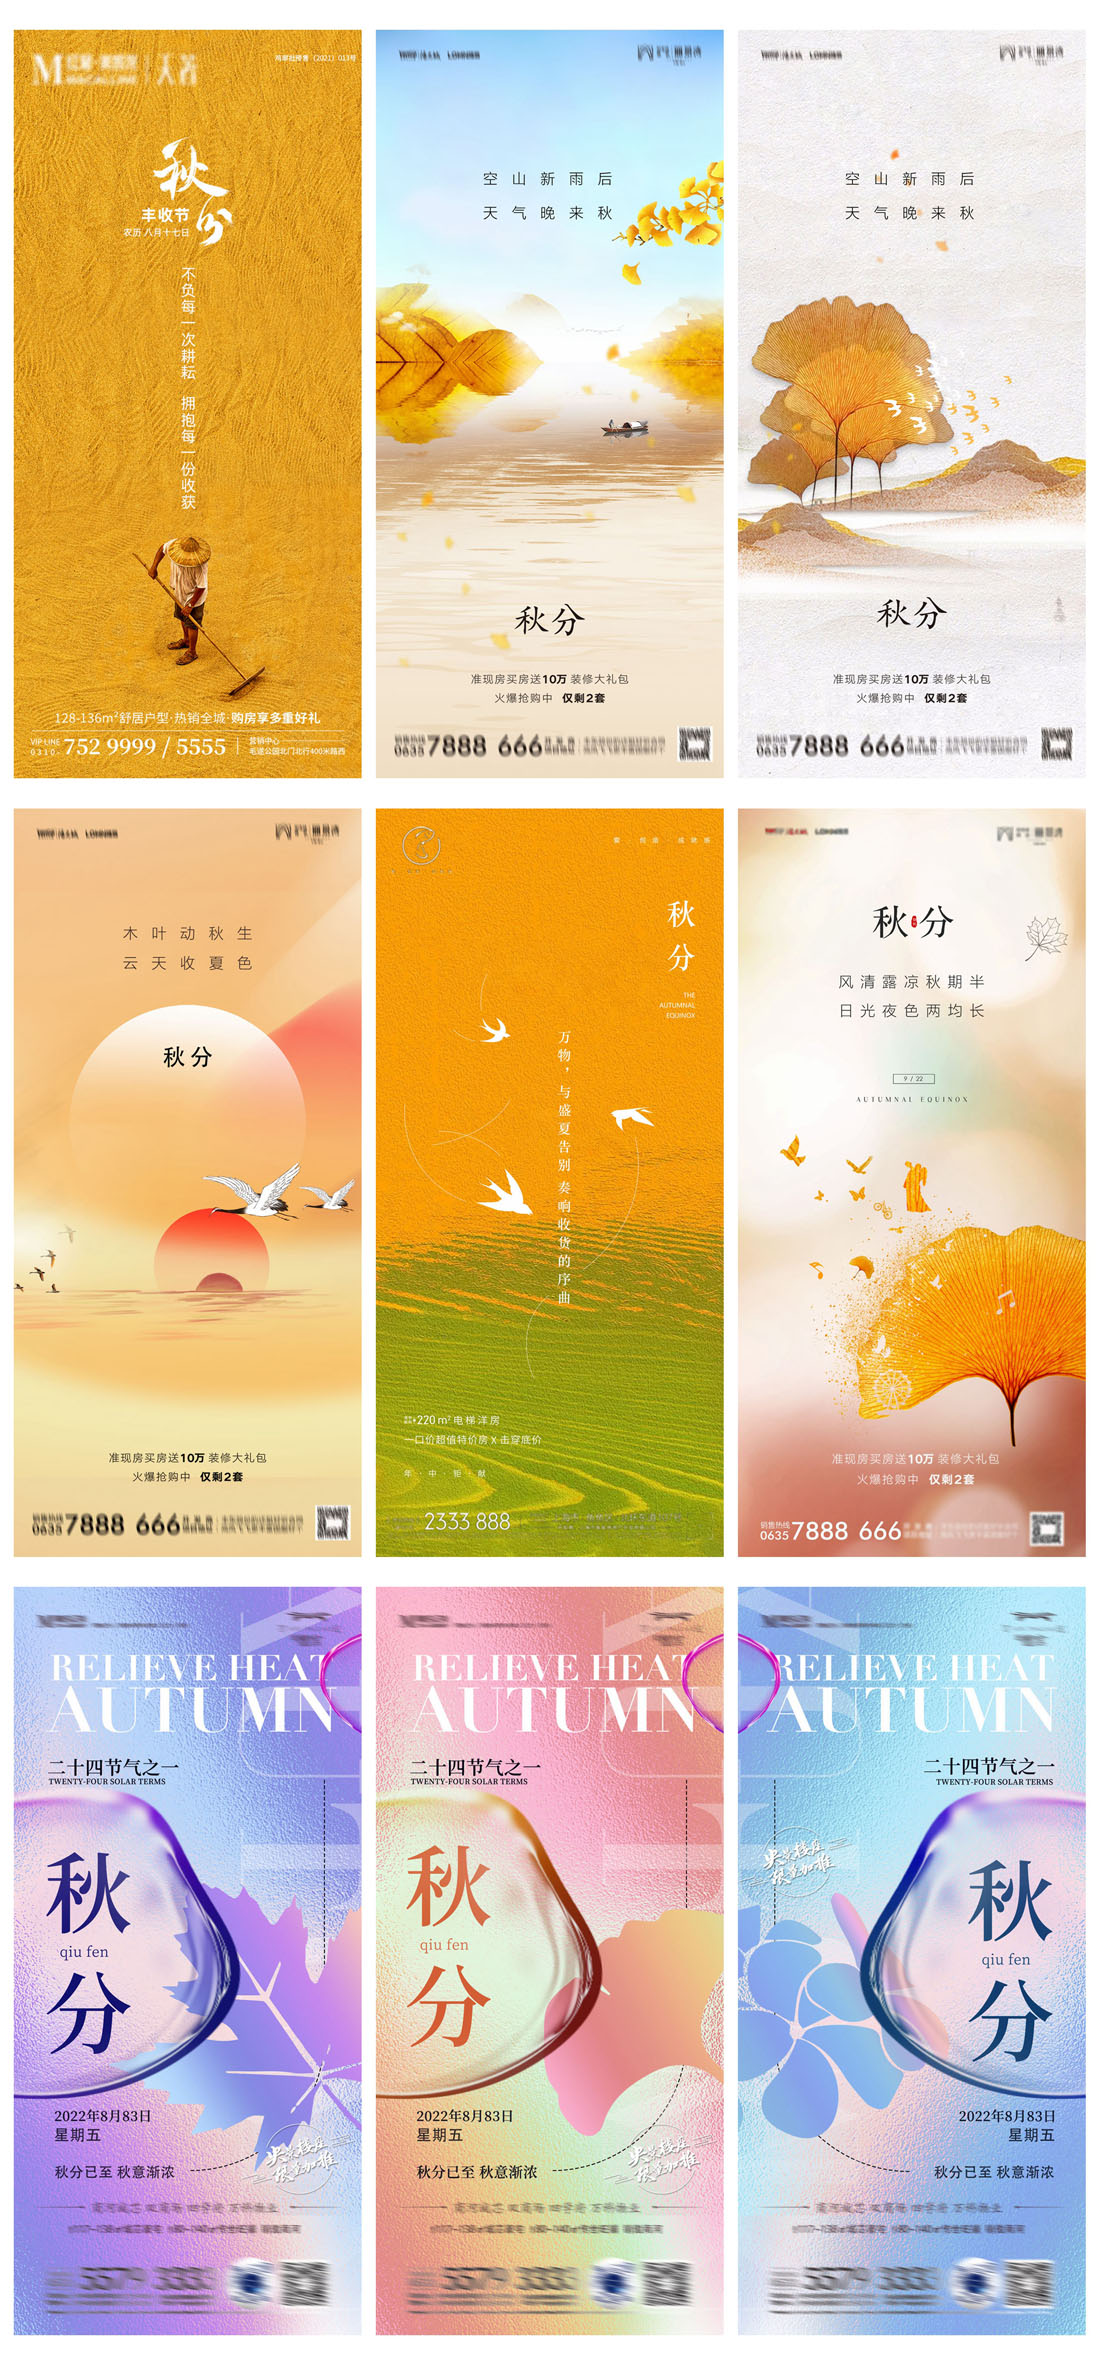 52款中国传统节日二十四节气秋分节日宣传海报PSD模板 设计素材 第5张